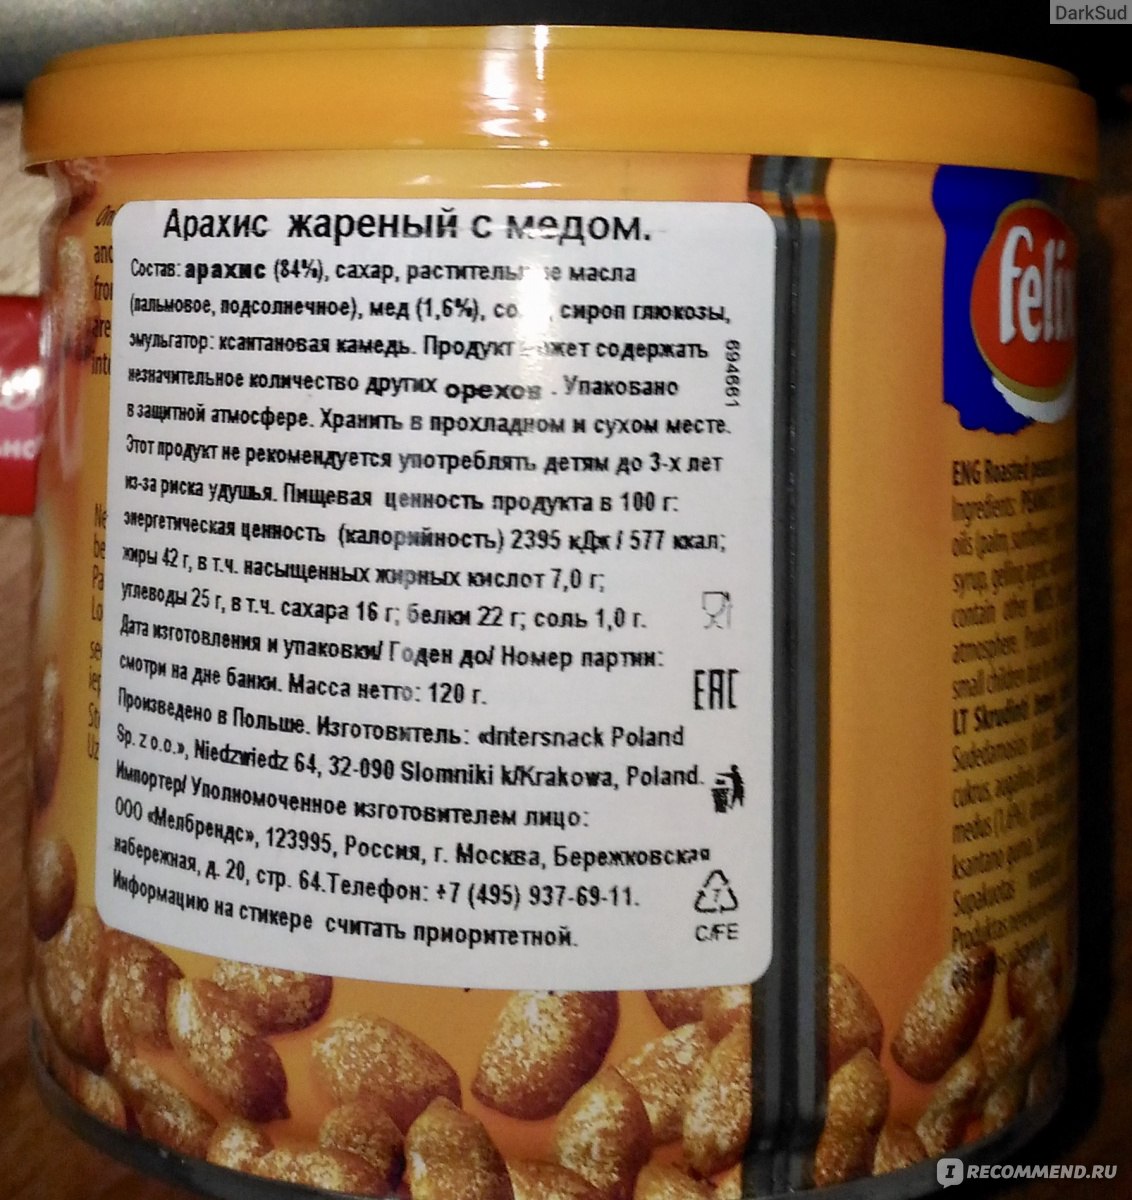 Сколько калорий в арахисовой. Арахис пищевая ценность. Пищевая ценность арахиса жареного. Арахис пищевая ценность в 100 гр. Арахис состав на 100 грамм.